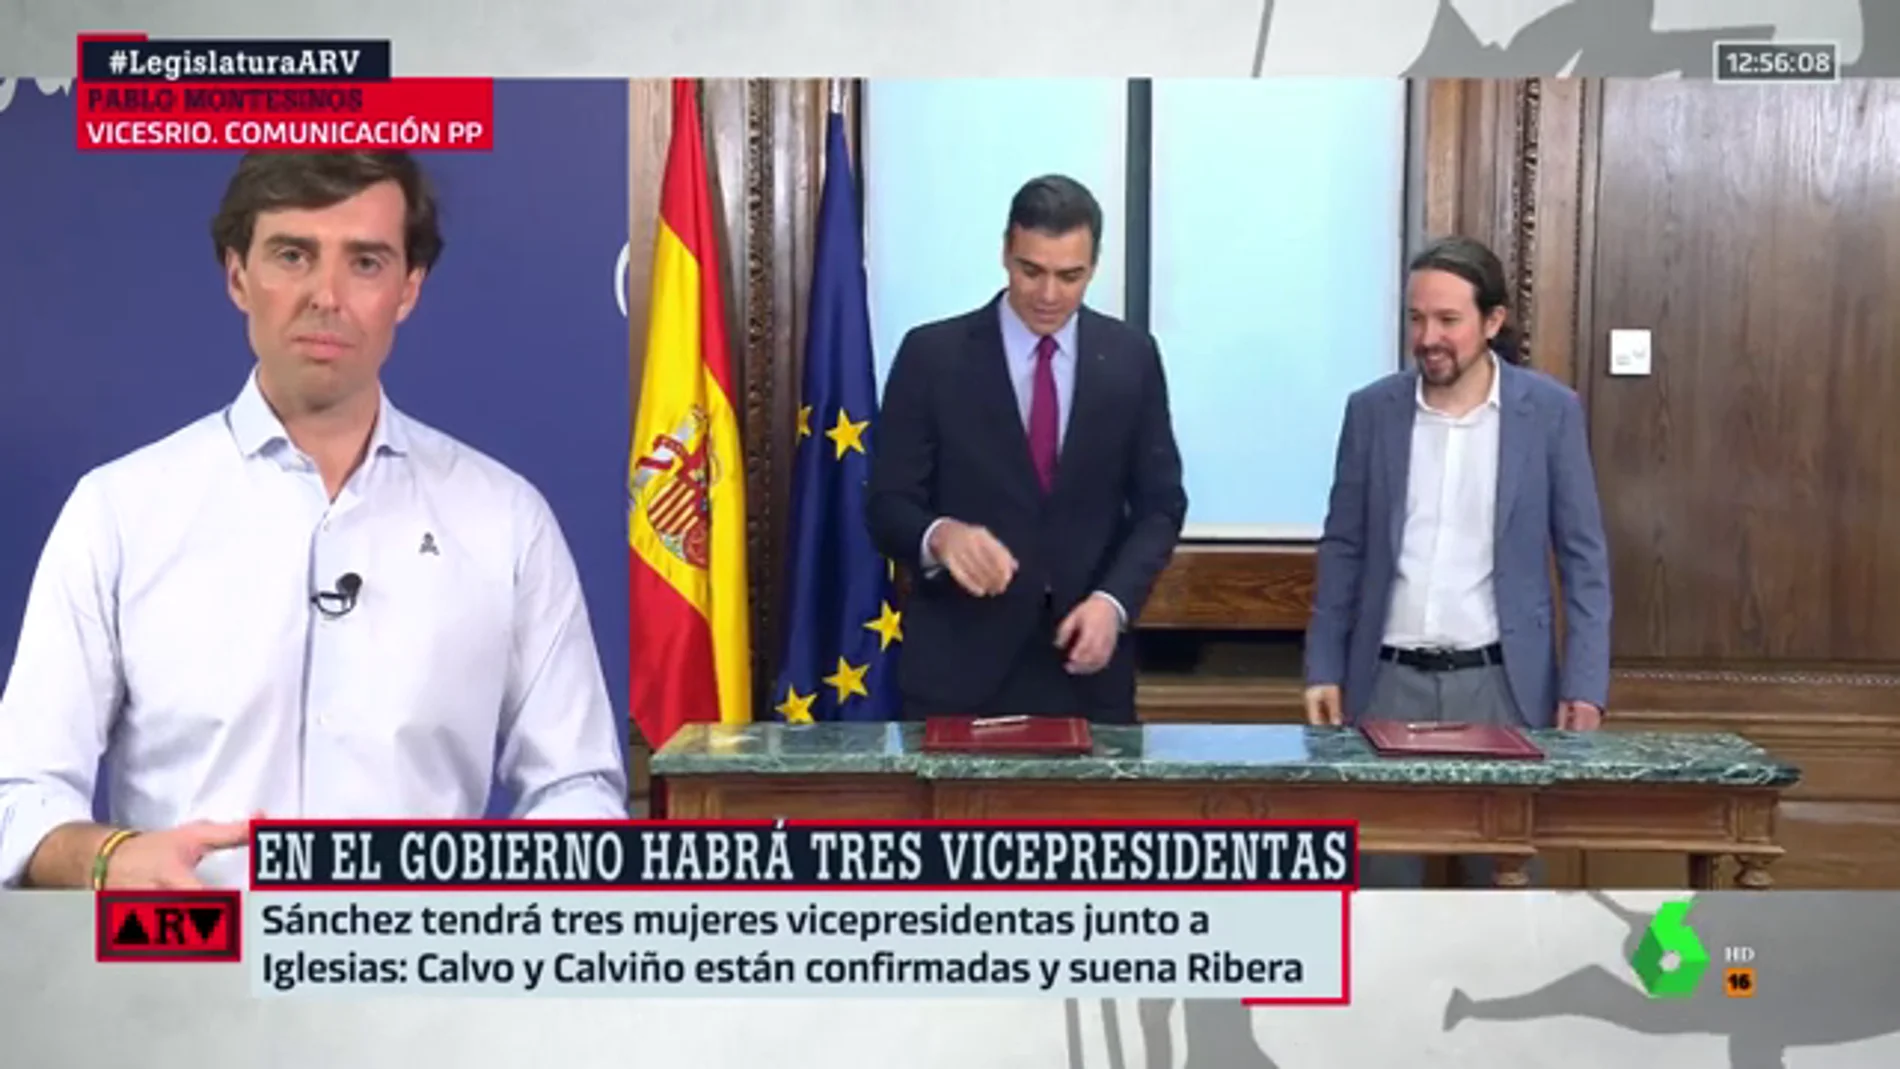 Pablo Montesinos critica las cuatro vicepresidencias del Gobierno: "Es el despilfarro del PSOE y Podemos"